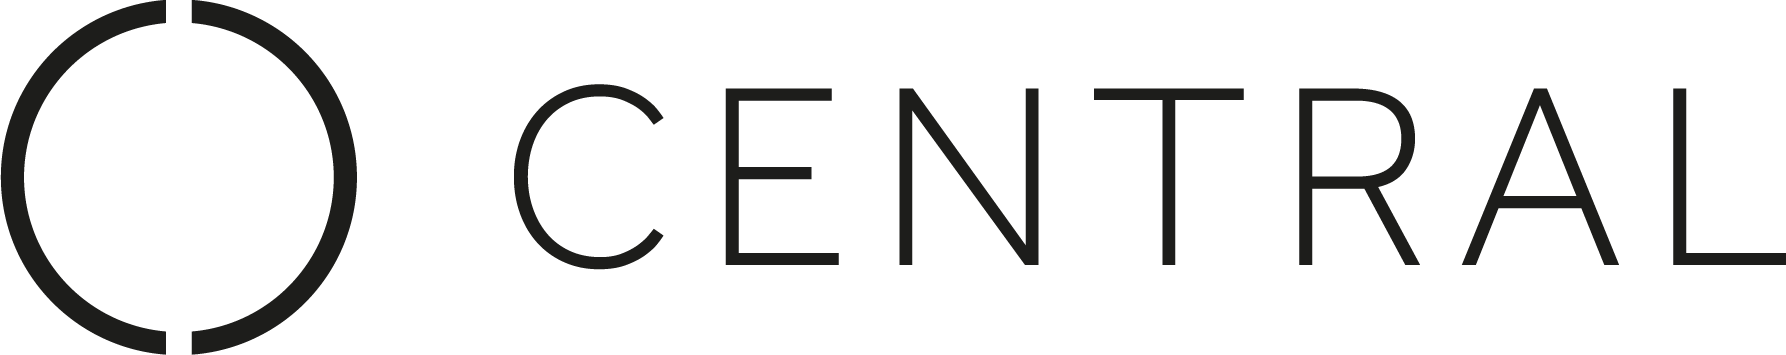 Cental Church logo